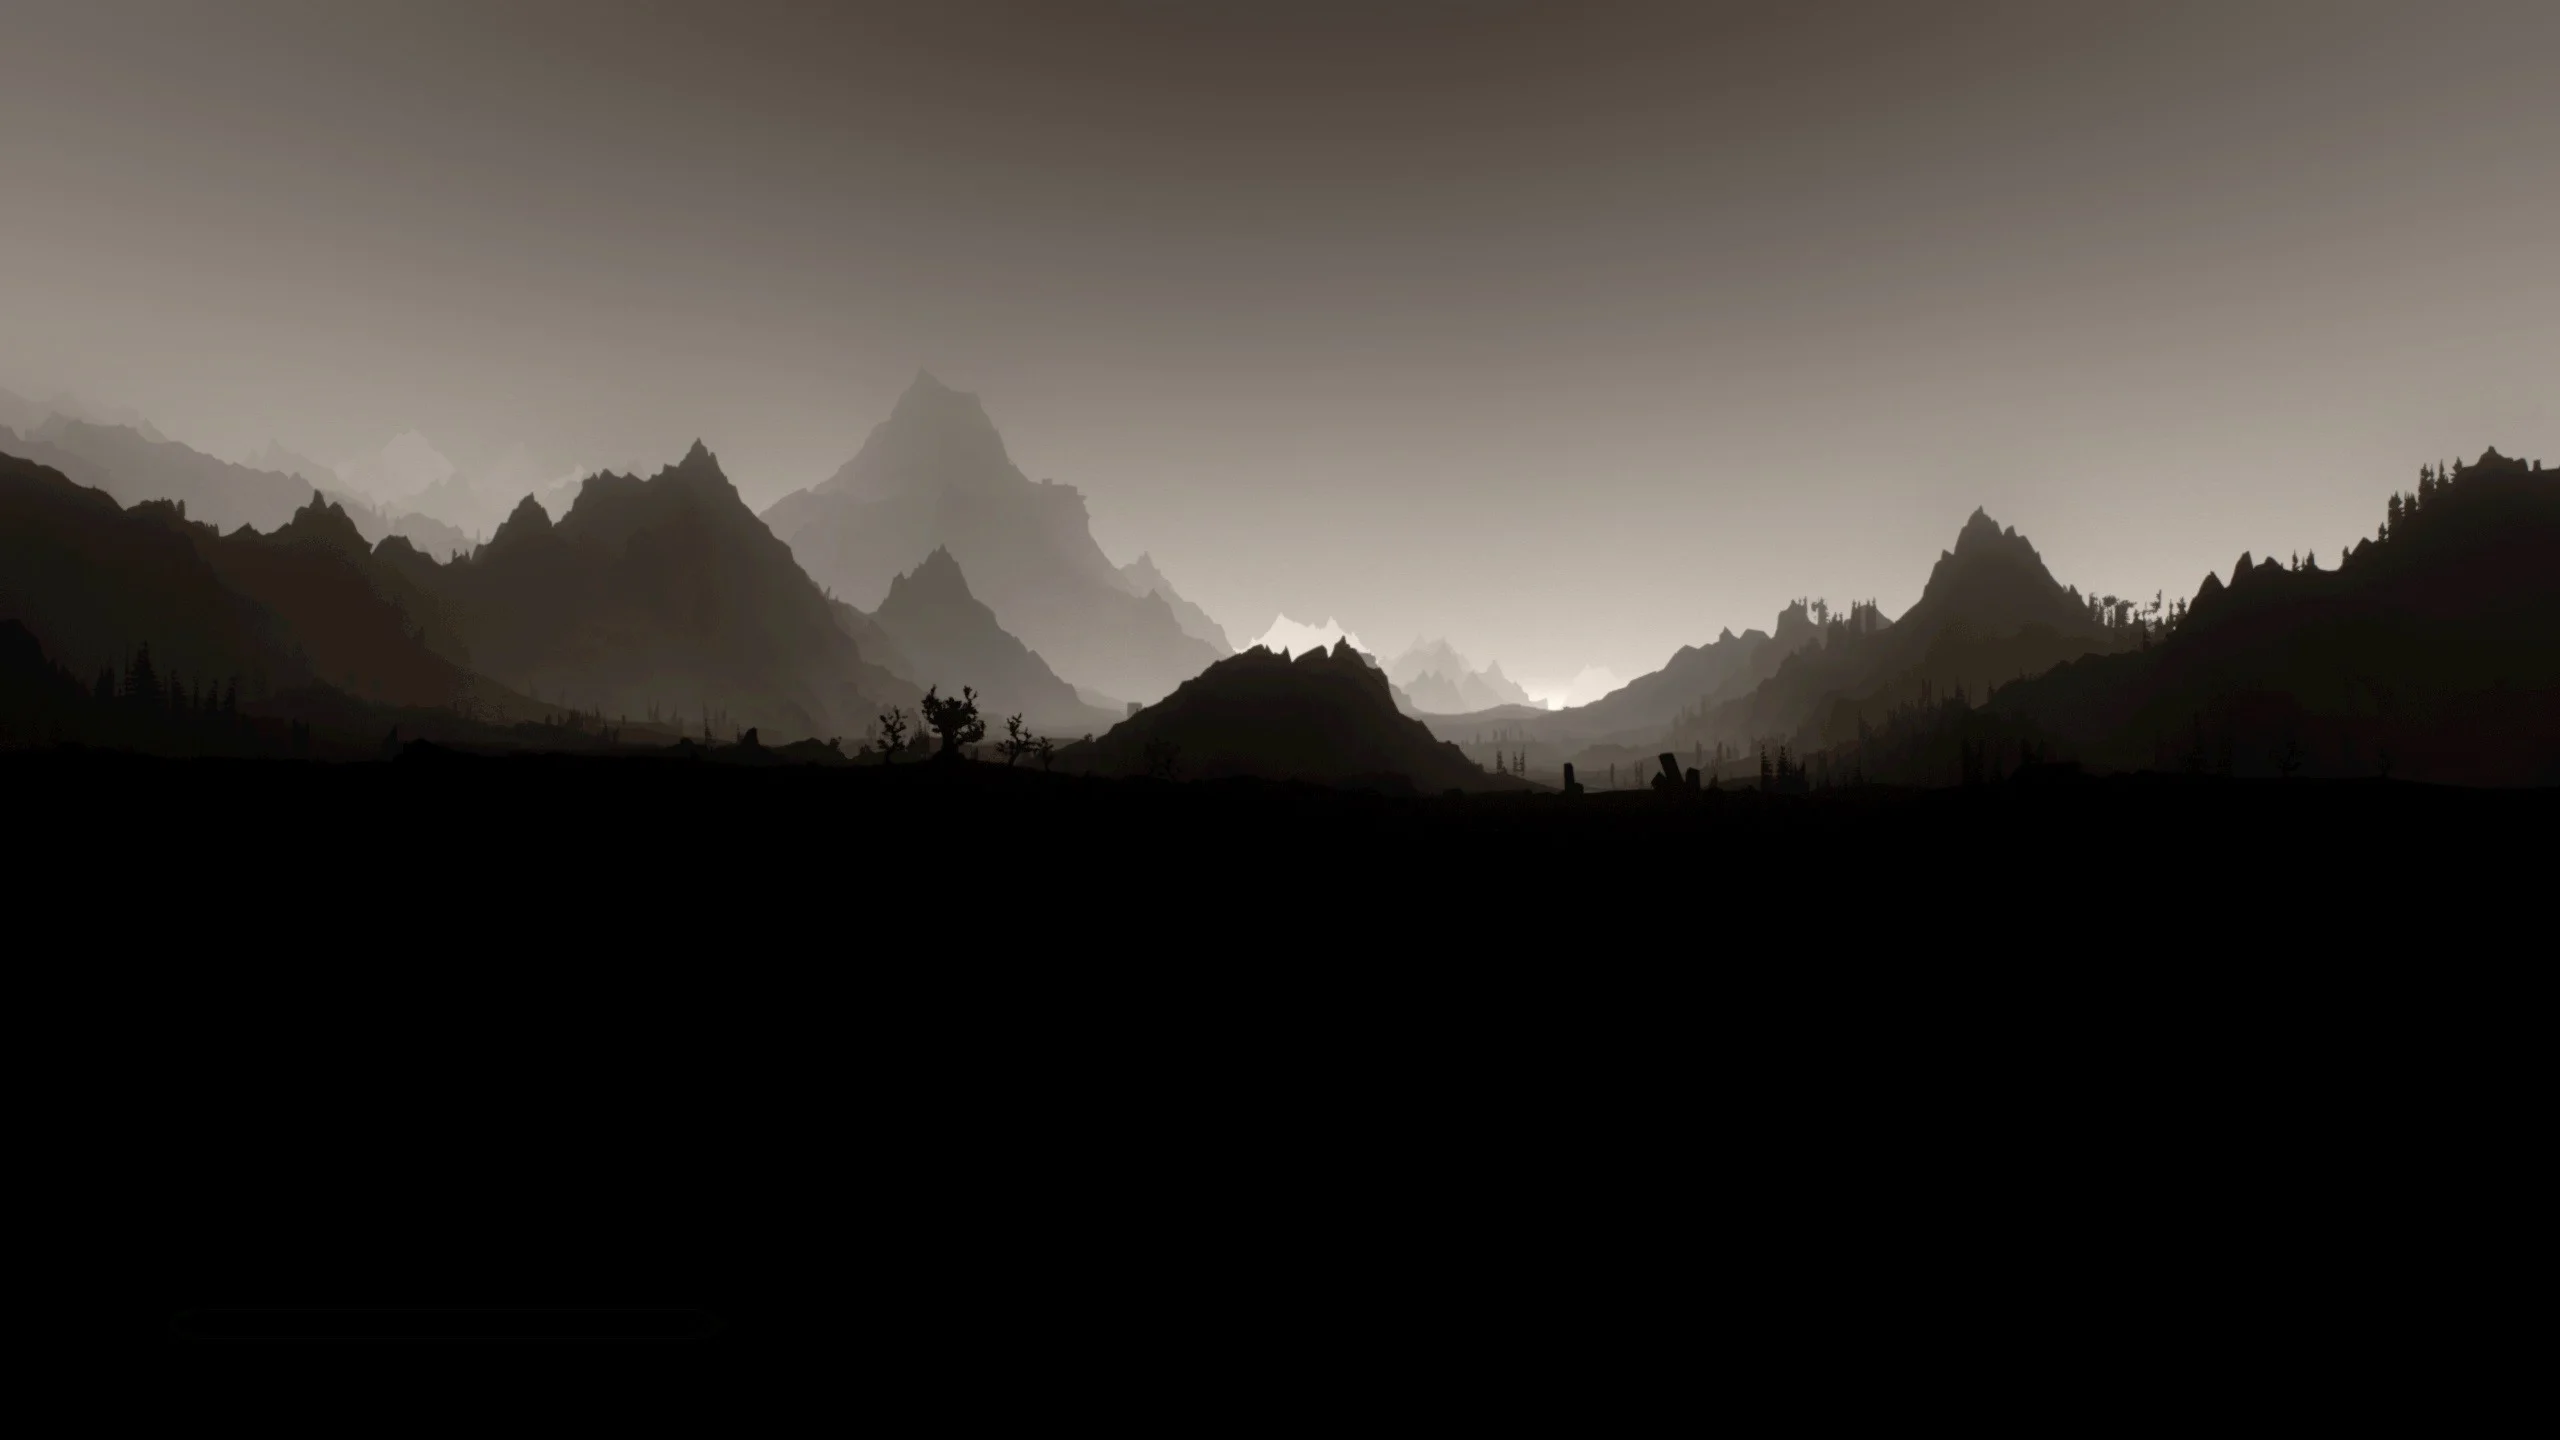 The Elder Scrolls V: Skyrim, Landscape, Monochrome, Minimalism Wallpapers  HD / Desktop and Mobile Backgrounds